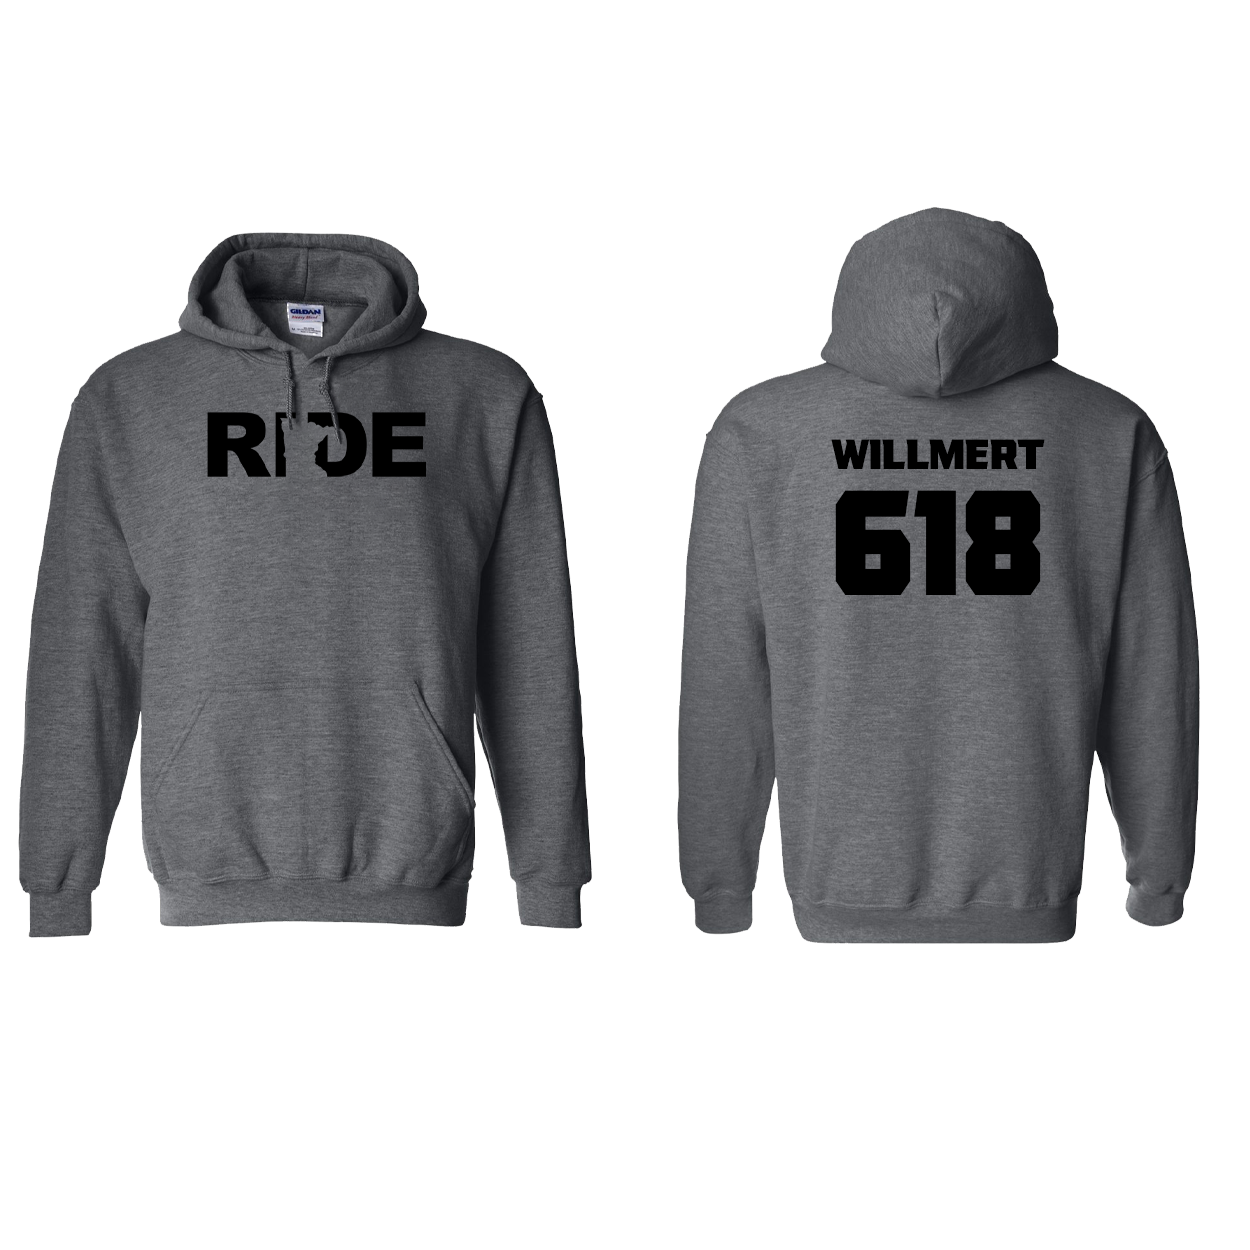 FXR BMX Race Team Classic Athlete Support Sweatshirt N. WILLMERT #618 Dark Heather (Black Logo)